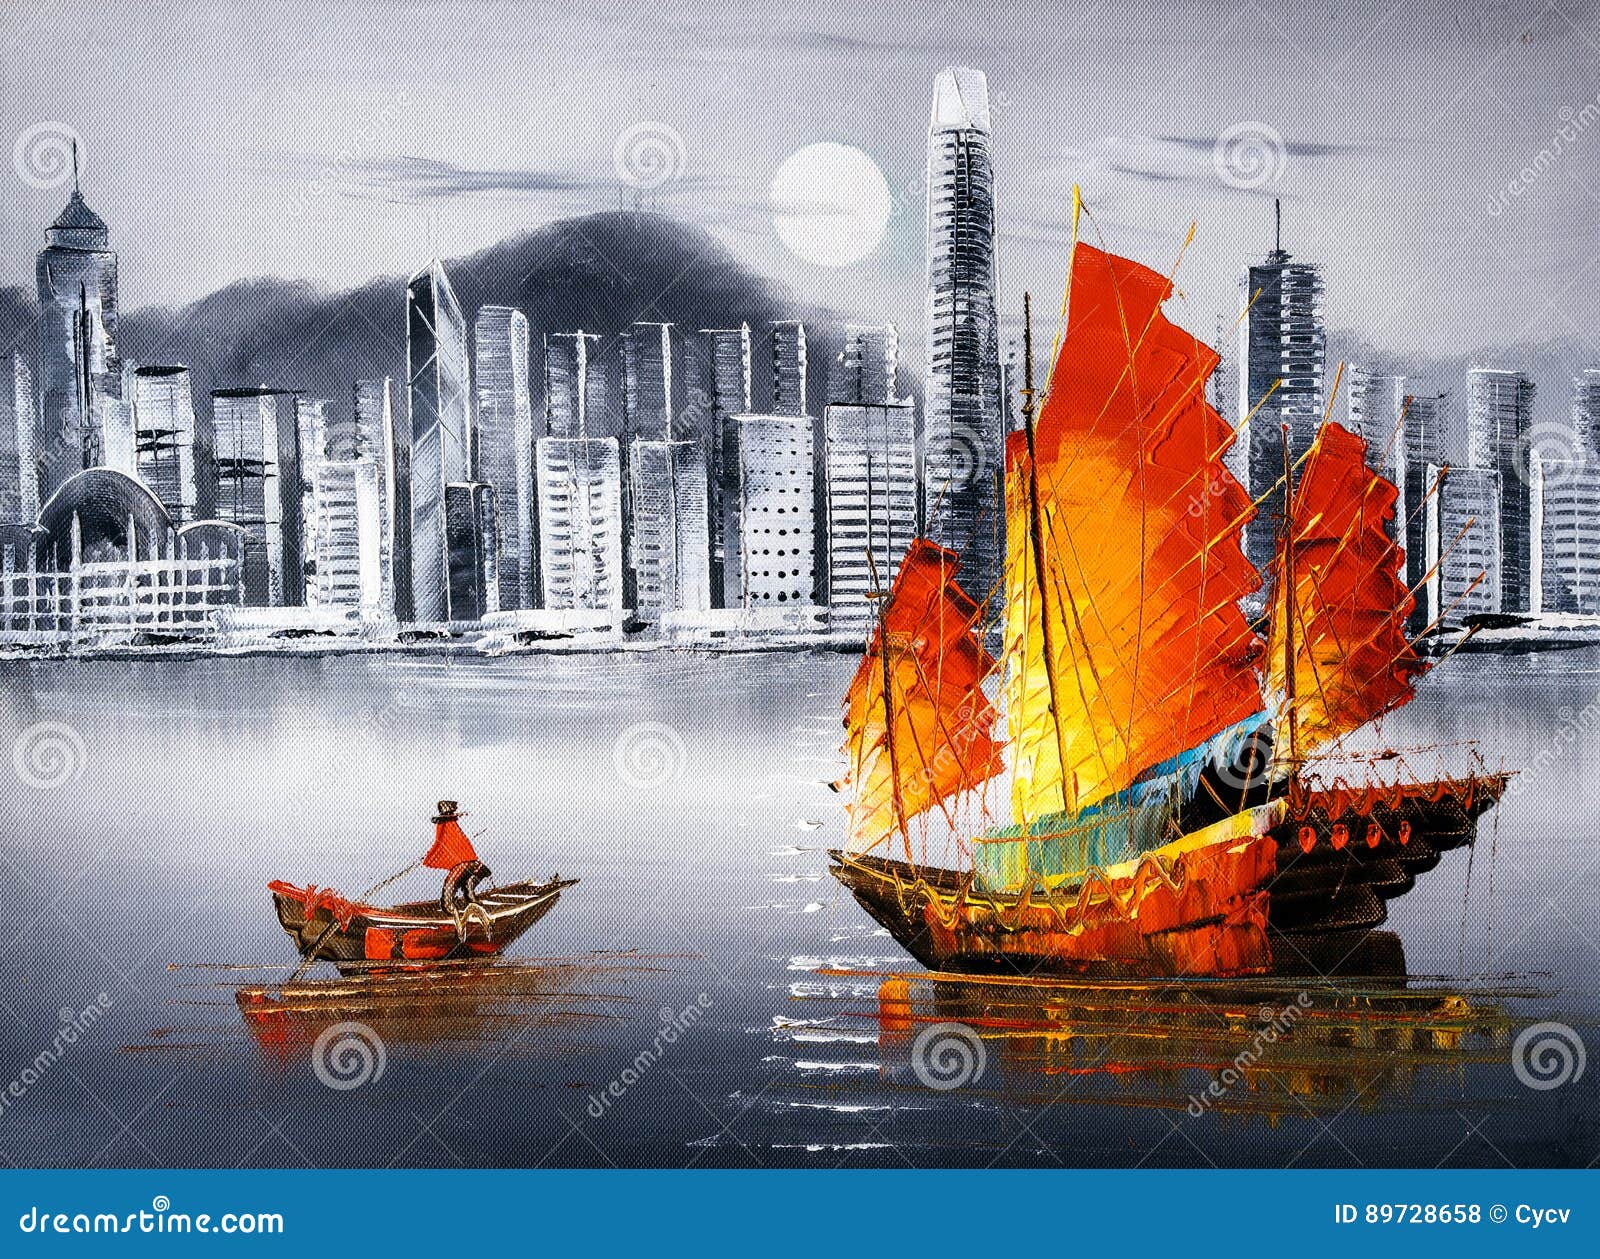 oil painting - victoria harbor, hong kong